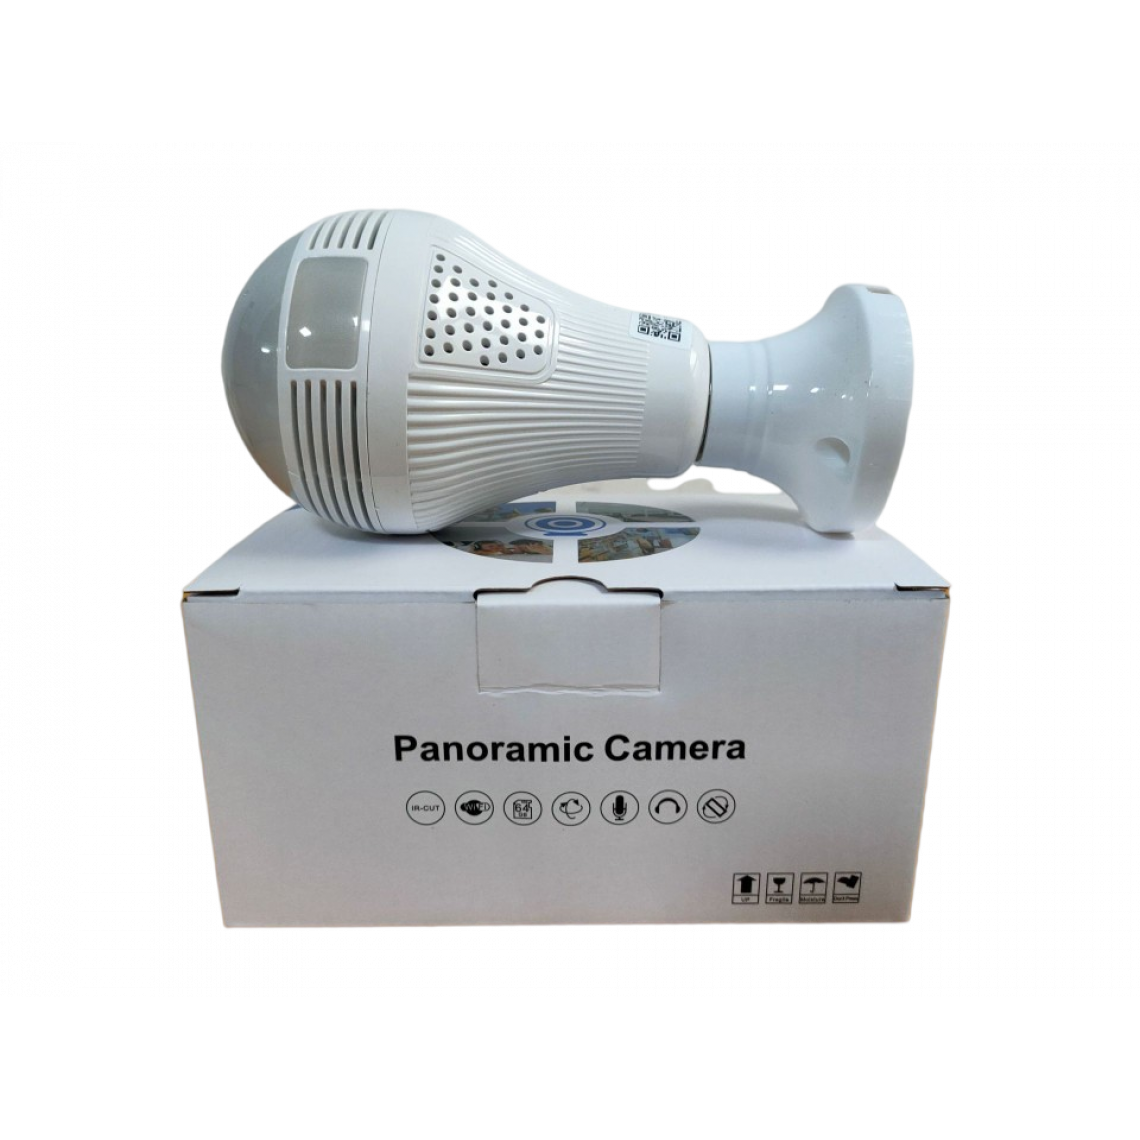 Generic - Caméra panoramique à ampoule 360 degrés WiFi caméra sans fil à distance lumière blanche vision nocturne HD intercom intelligent - Webcam